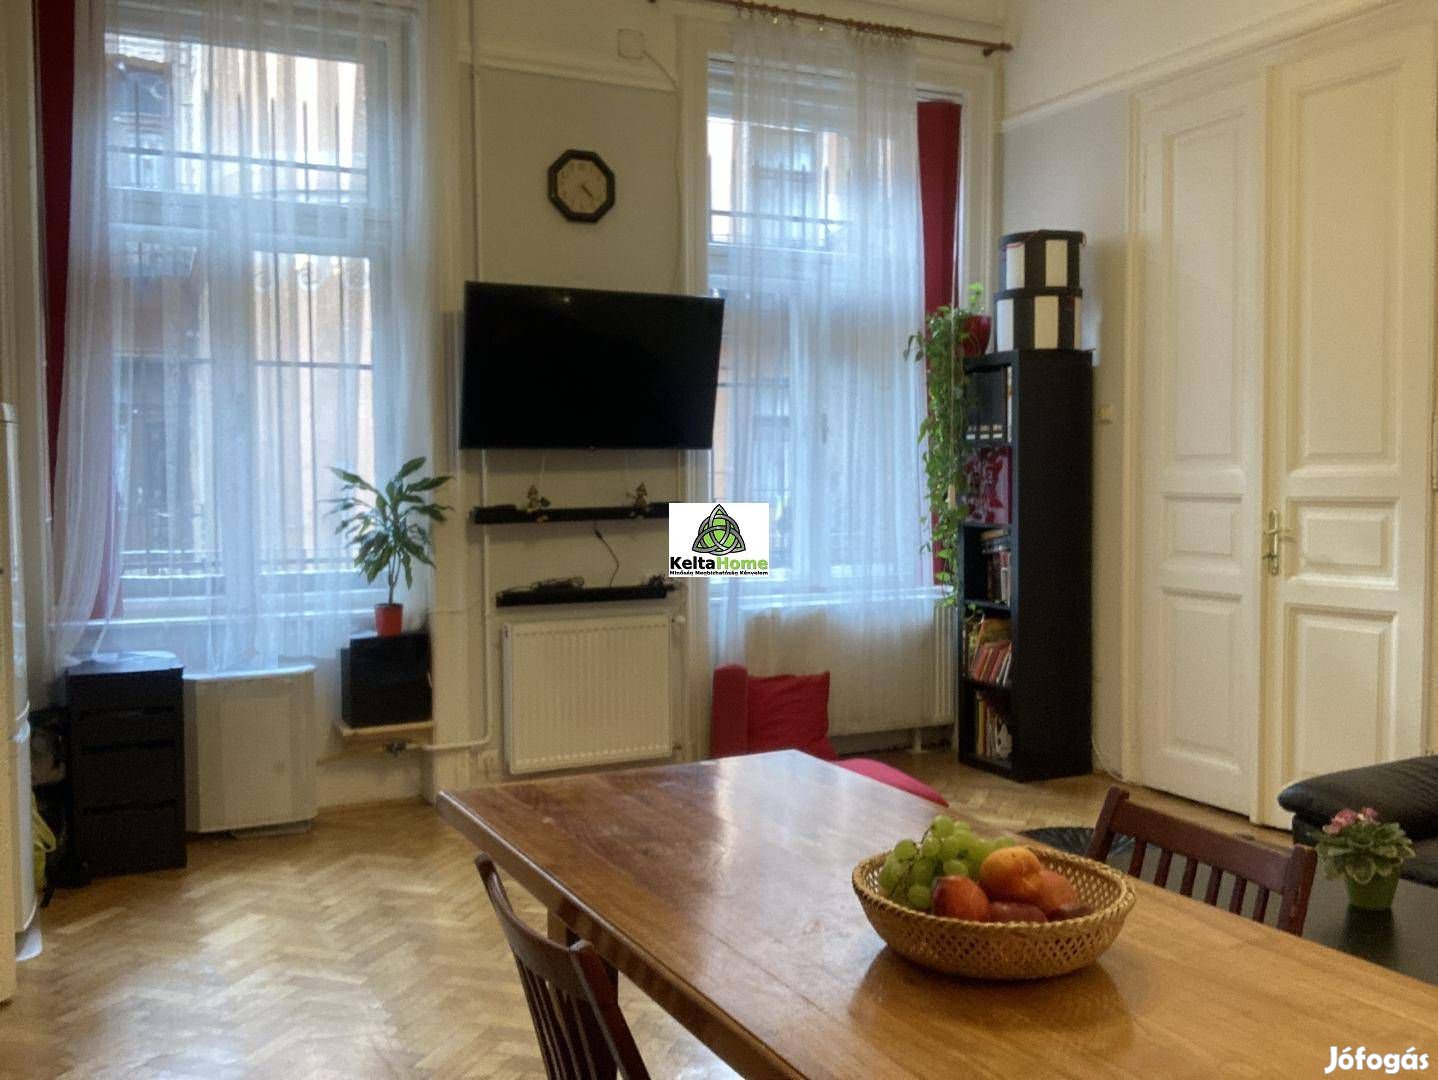 Budapesten a IX. kerületben eladó egy 3 szobás, 62m2-es, 3. eme 506_kh